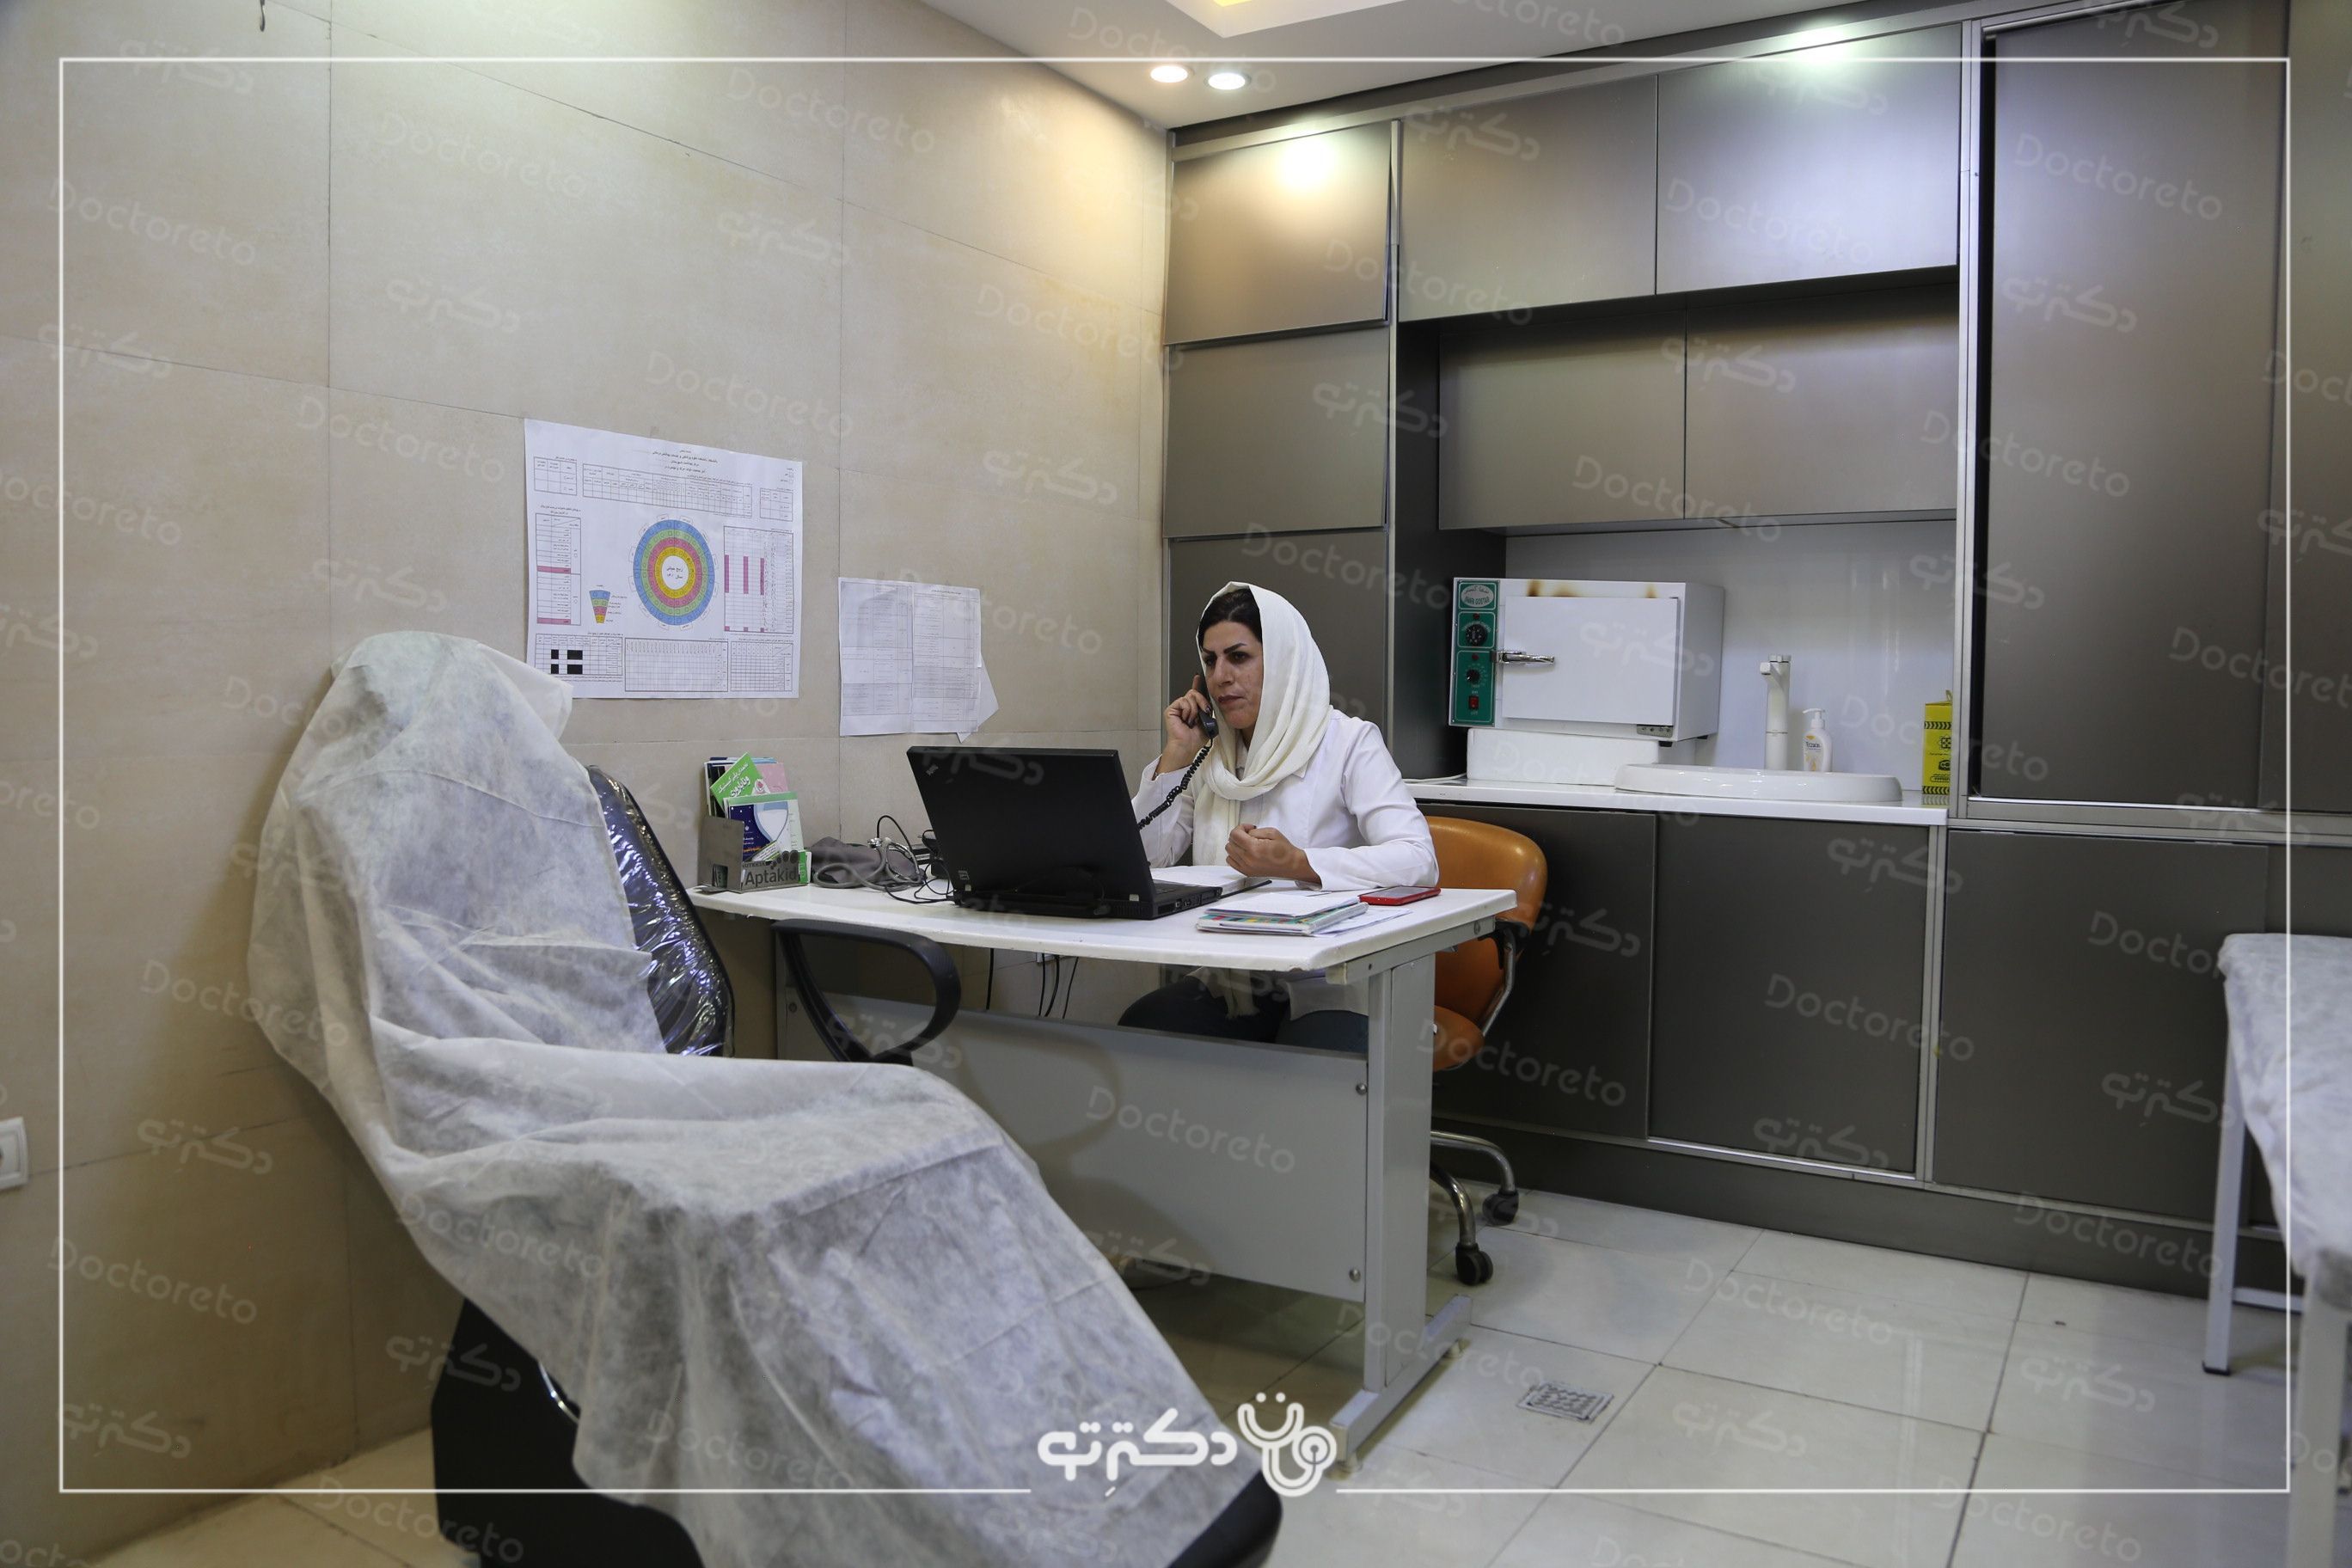 رفع افتادگی پلک به روش جراحی بلفاروپلاستی (پلک بالا) دکتر ابوالفضل بهجو در شیراز 4